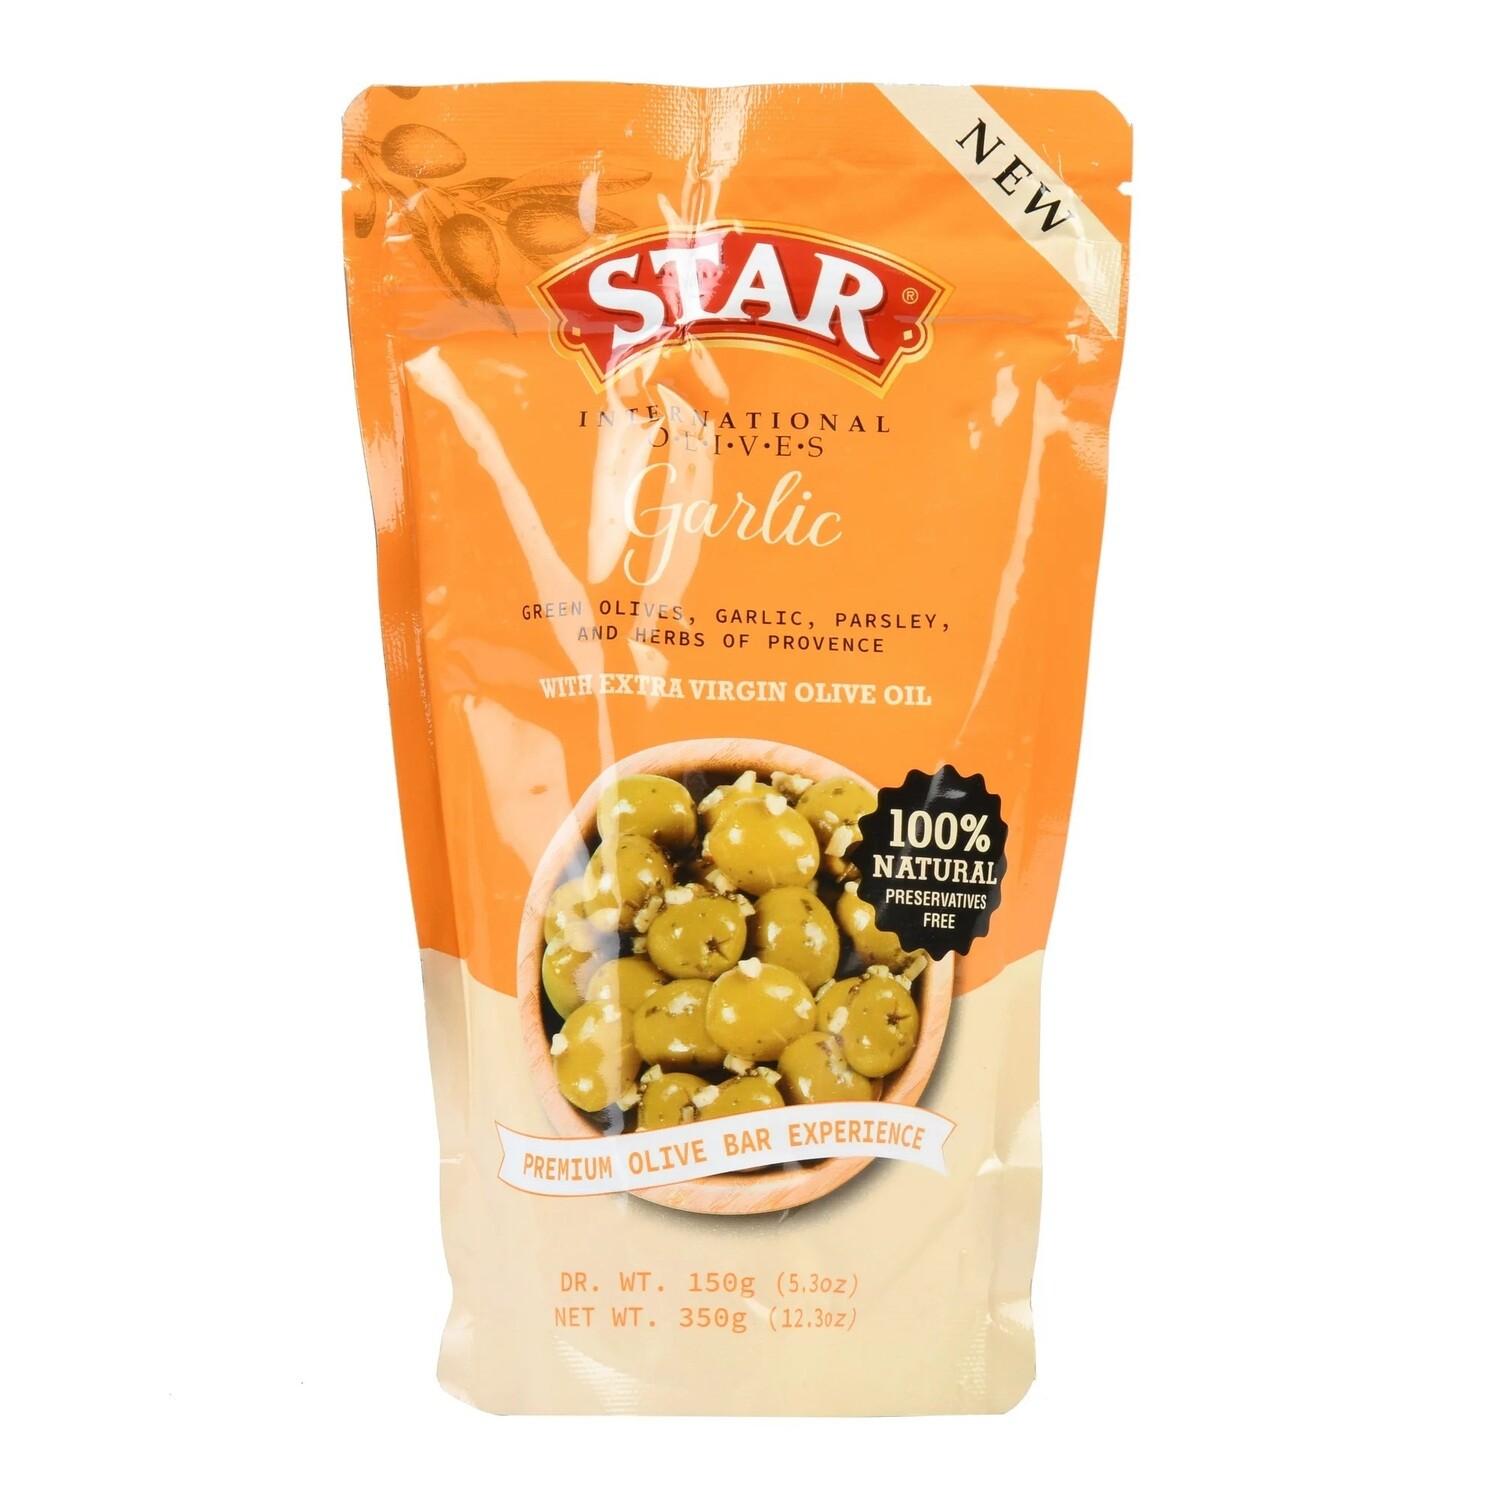 Star Olives - Garlic